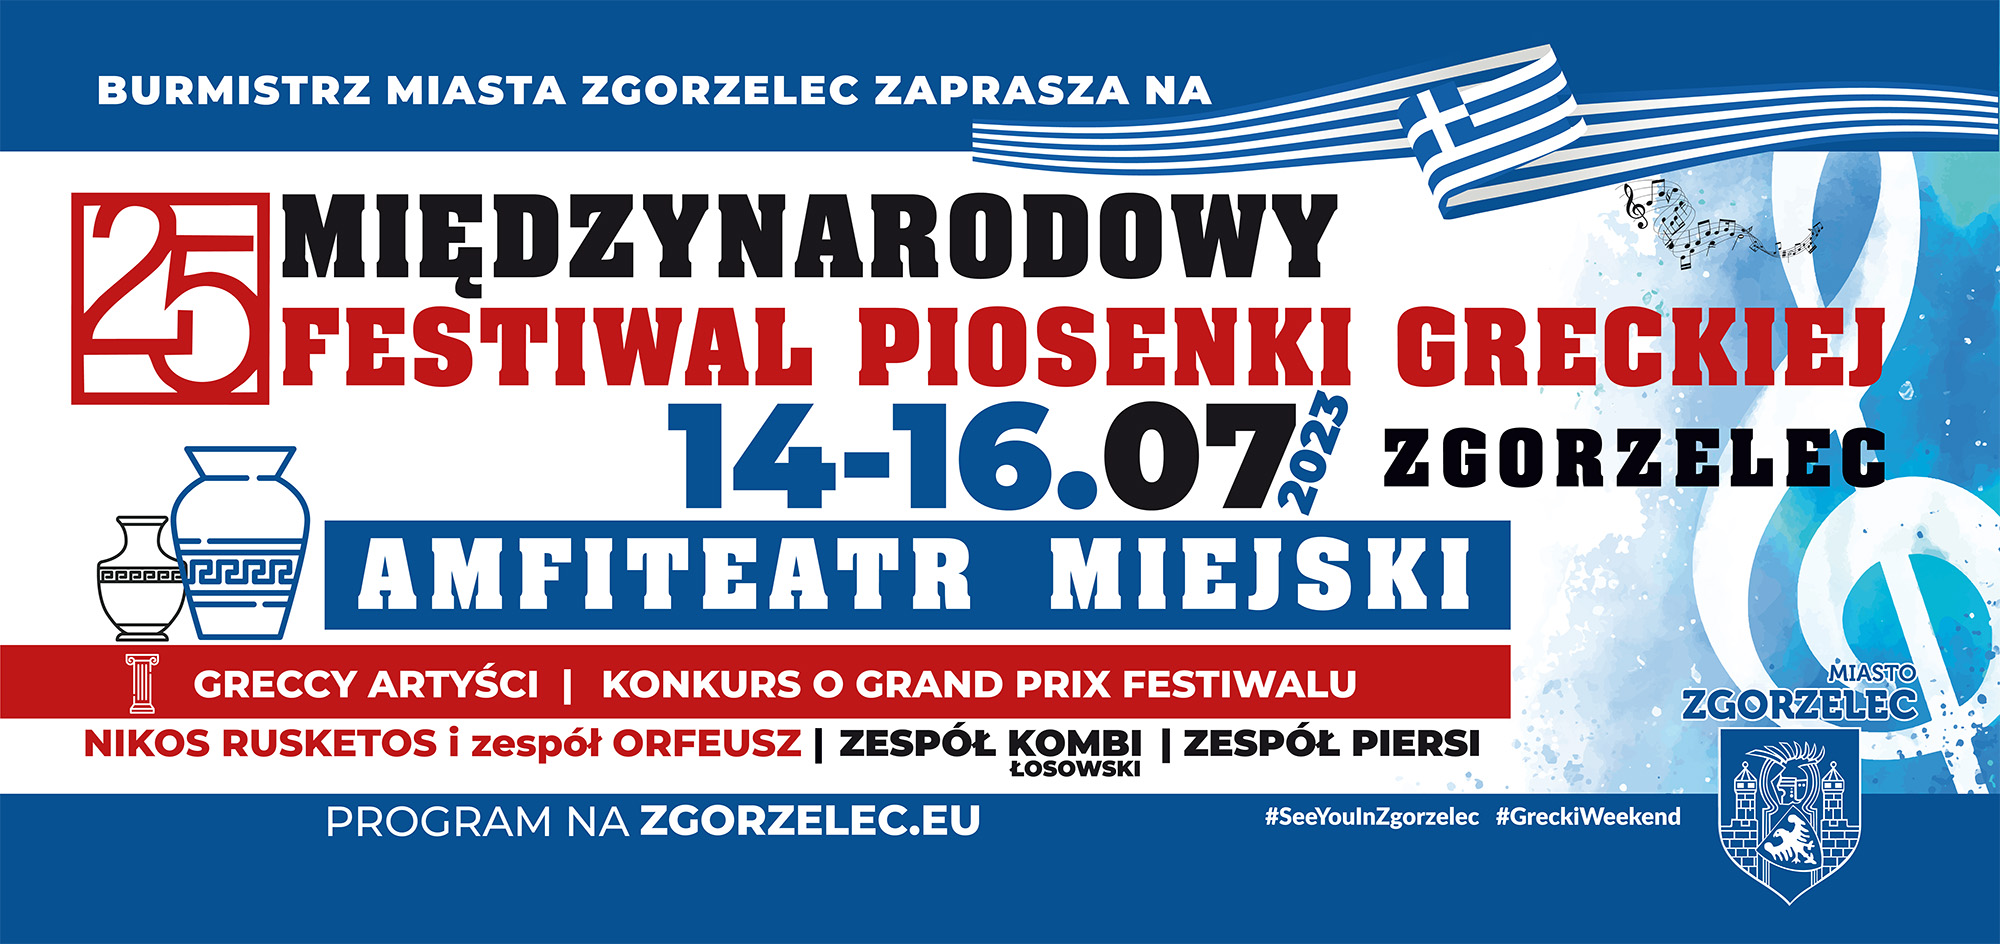 Zgorzelec małą Helladą po raz kolejny! Festiwal Piosenki Greckiej w Zgorzelcu świętuje jubileusz 25-lecia